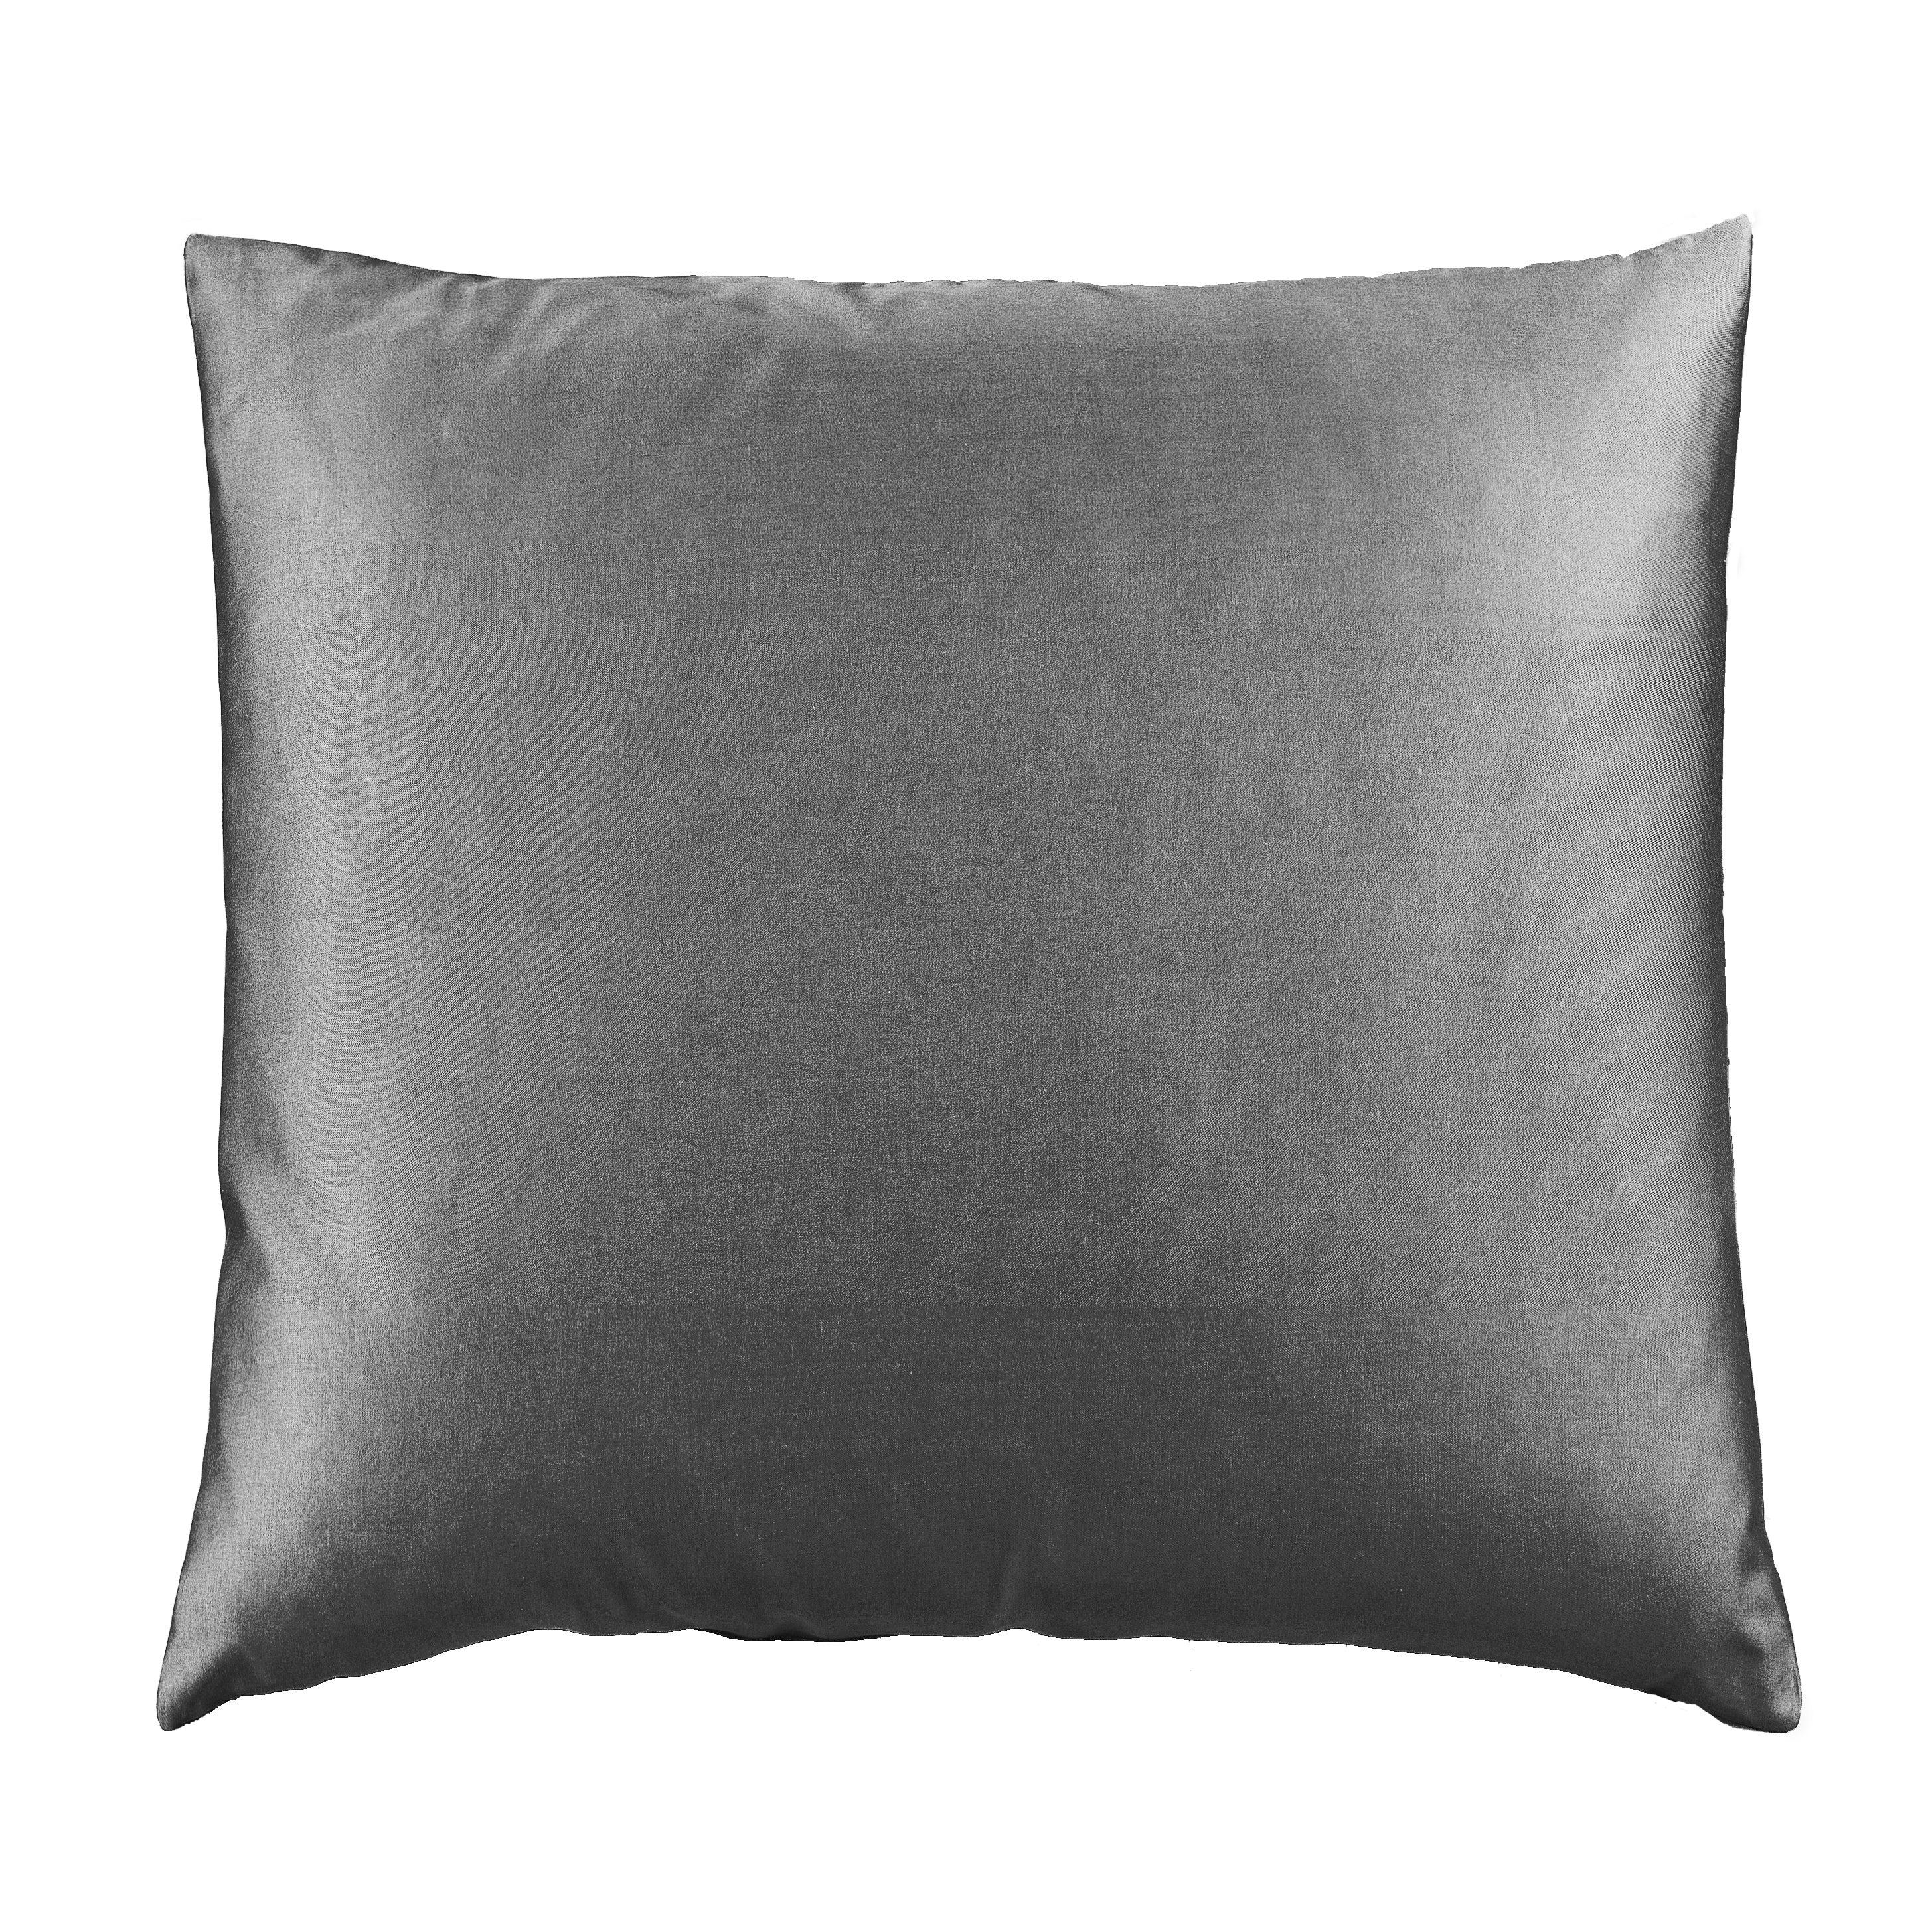 Cuscino Arredo 50 x 50 cm in Raso di puro cotone Antracite - Vanita di raso